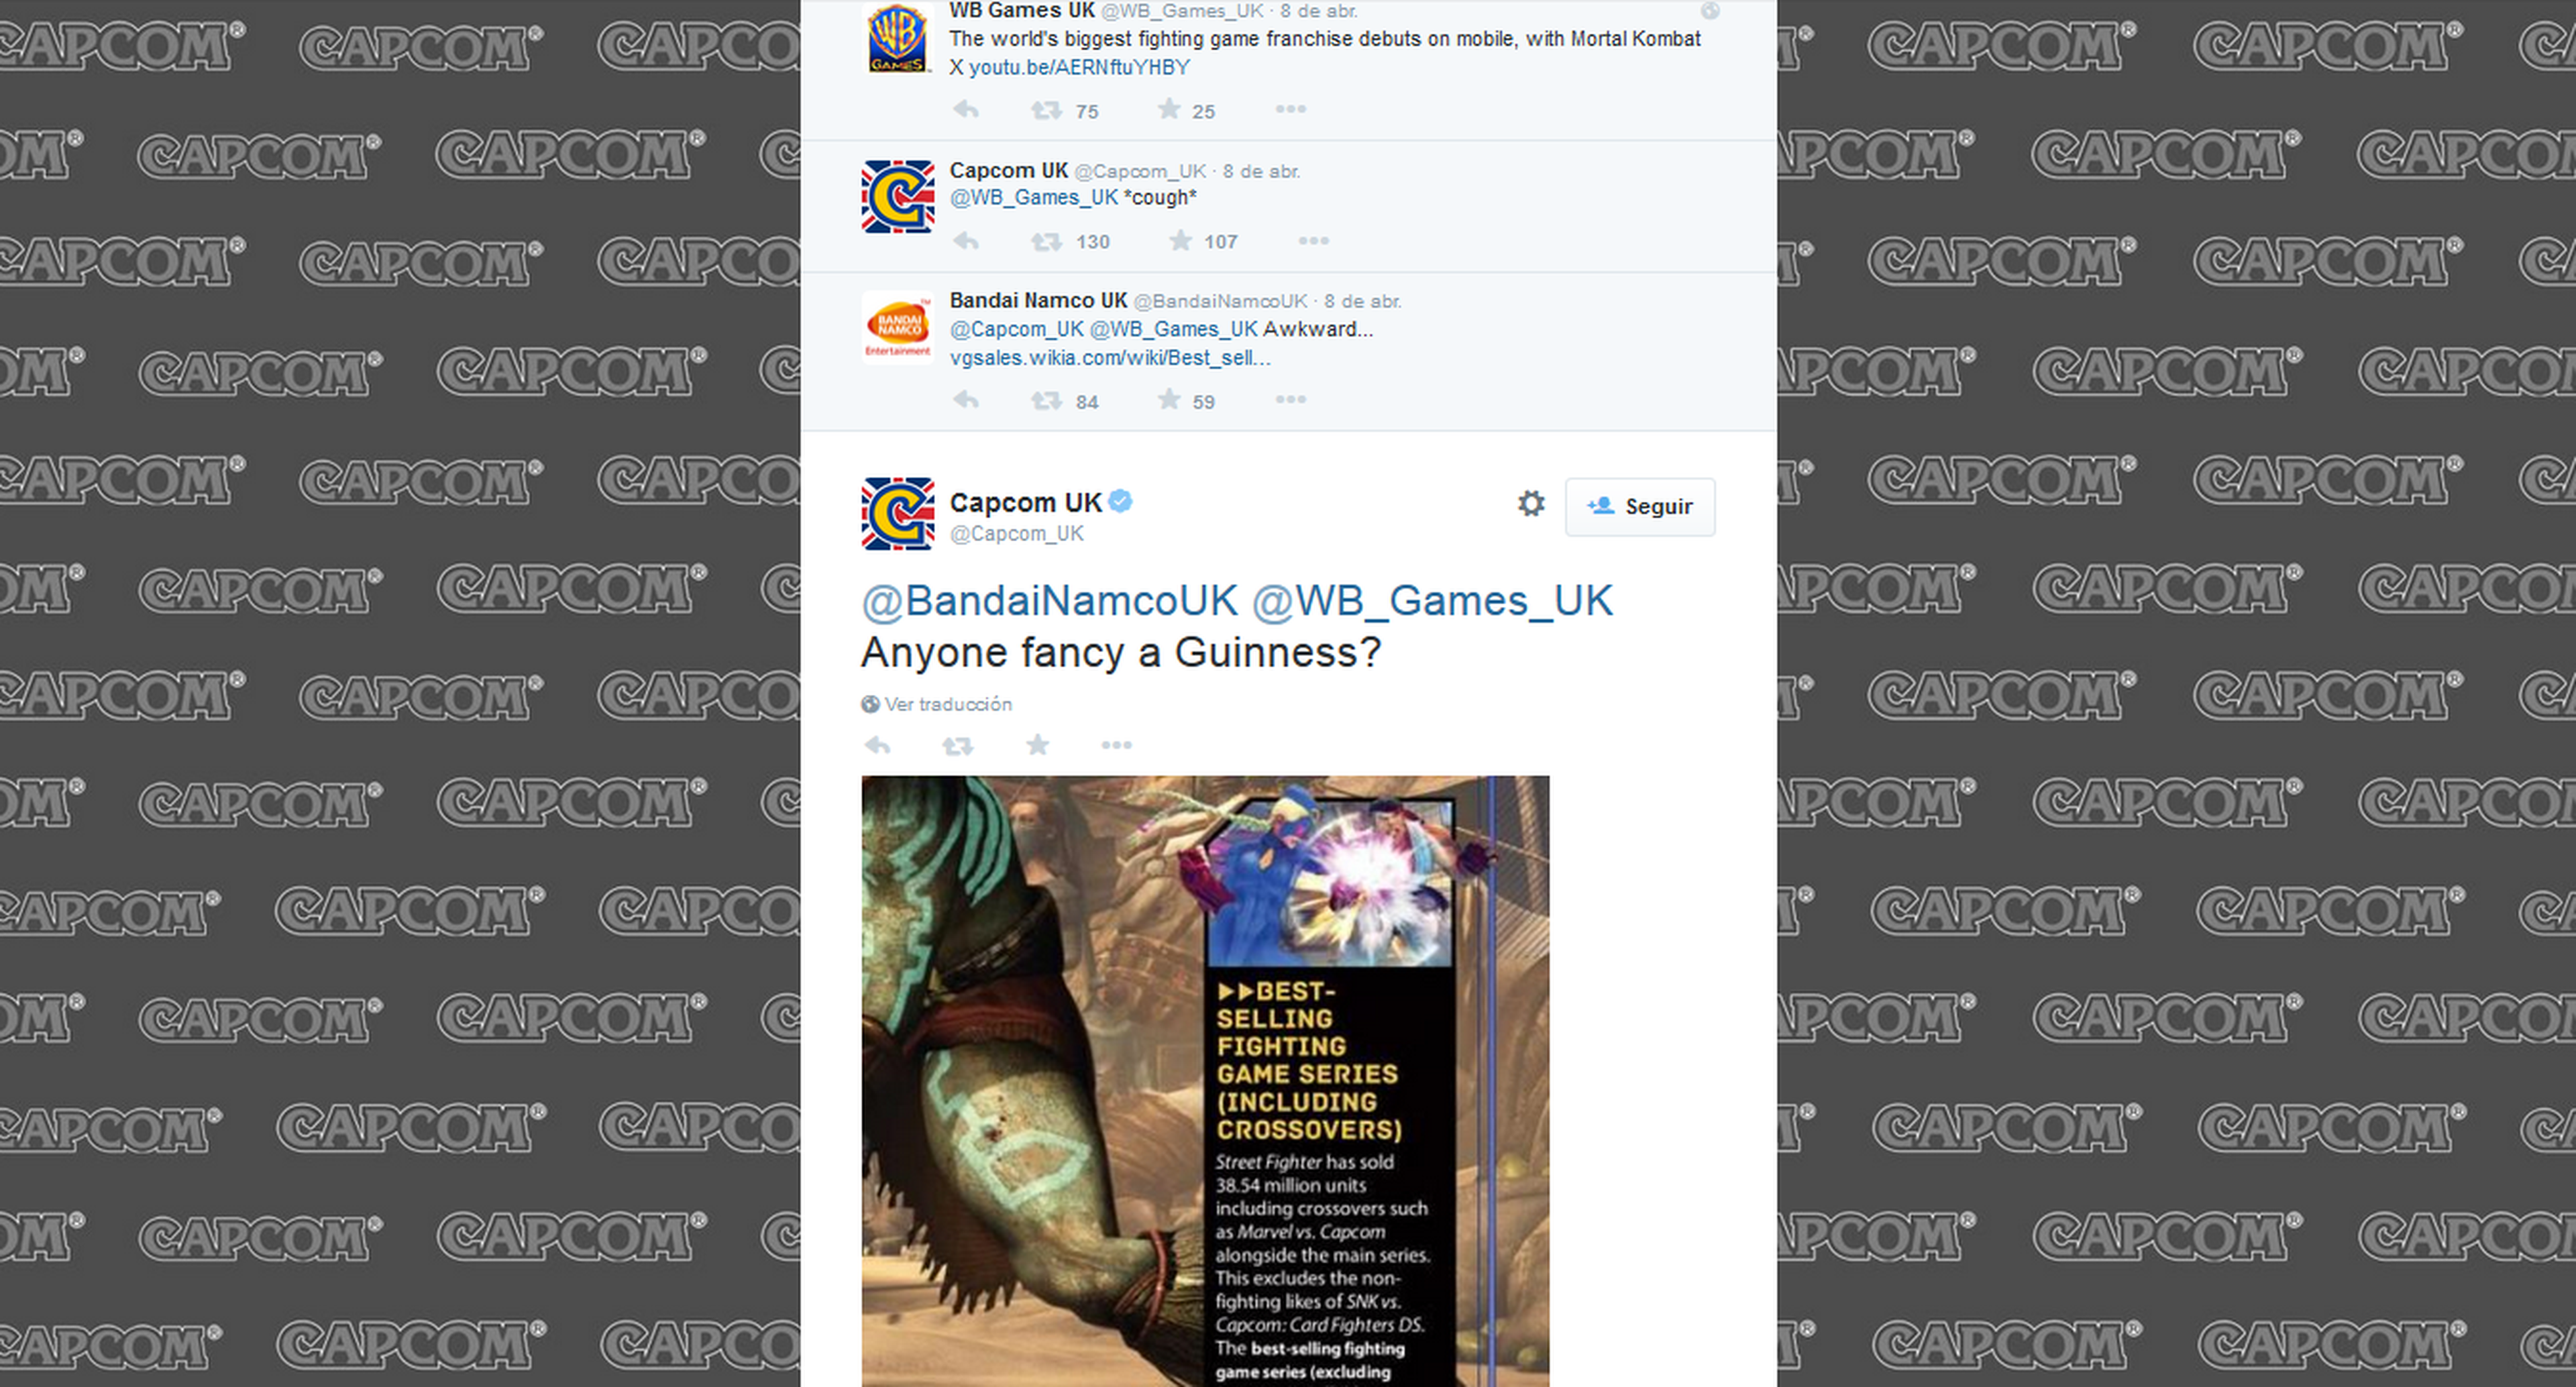 Juegos de lucha: Warner, Capcom y Bandai se pican en Twitter por ellos